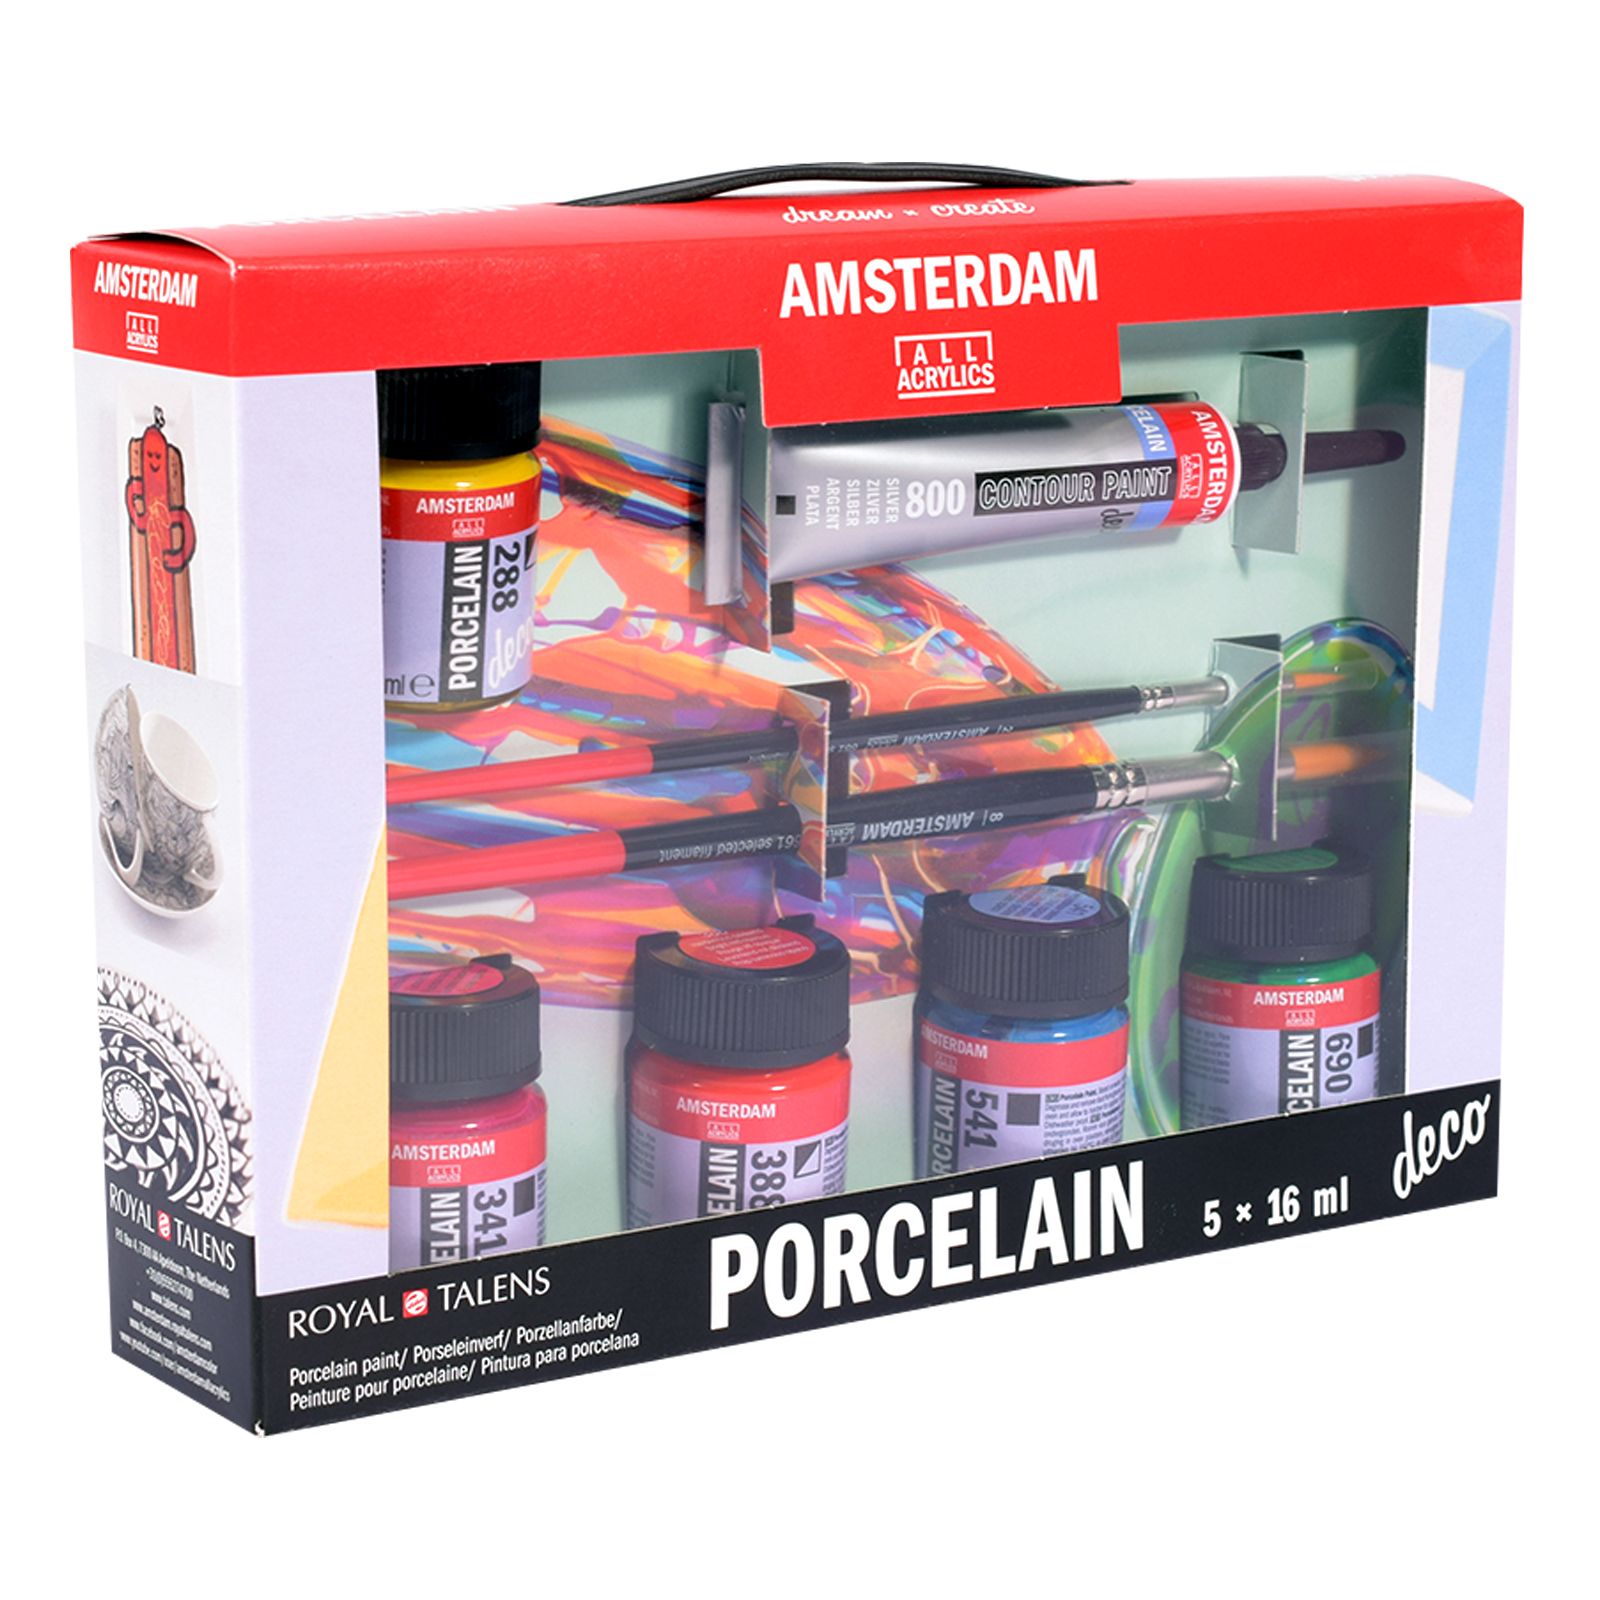 Amsterdam • Porcelain Paint Set - 5 x 16ml + 20ml Contour Paint